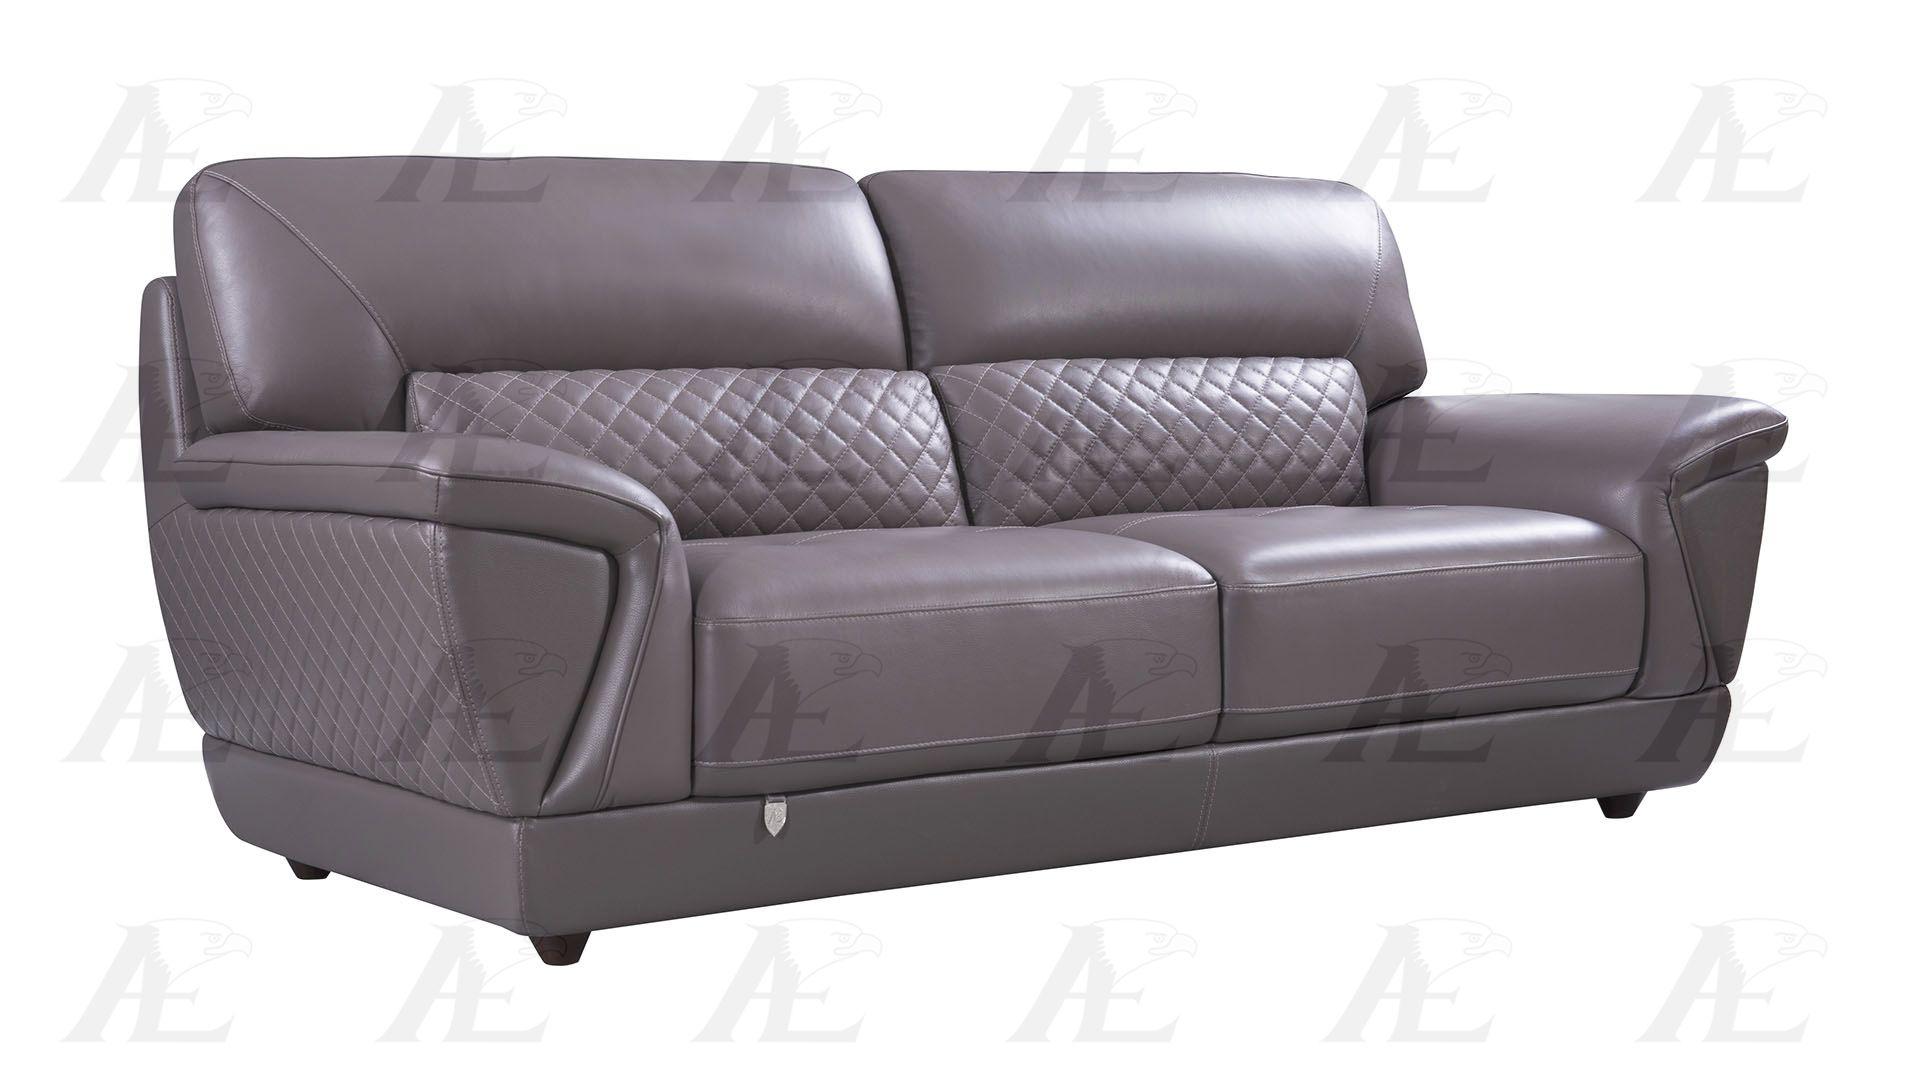 

    
EK099-DT Sofa Set
